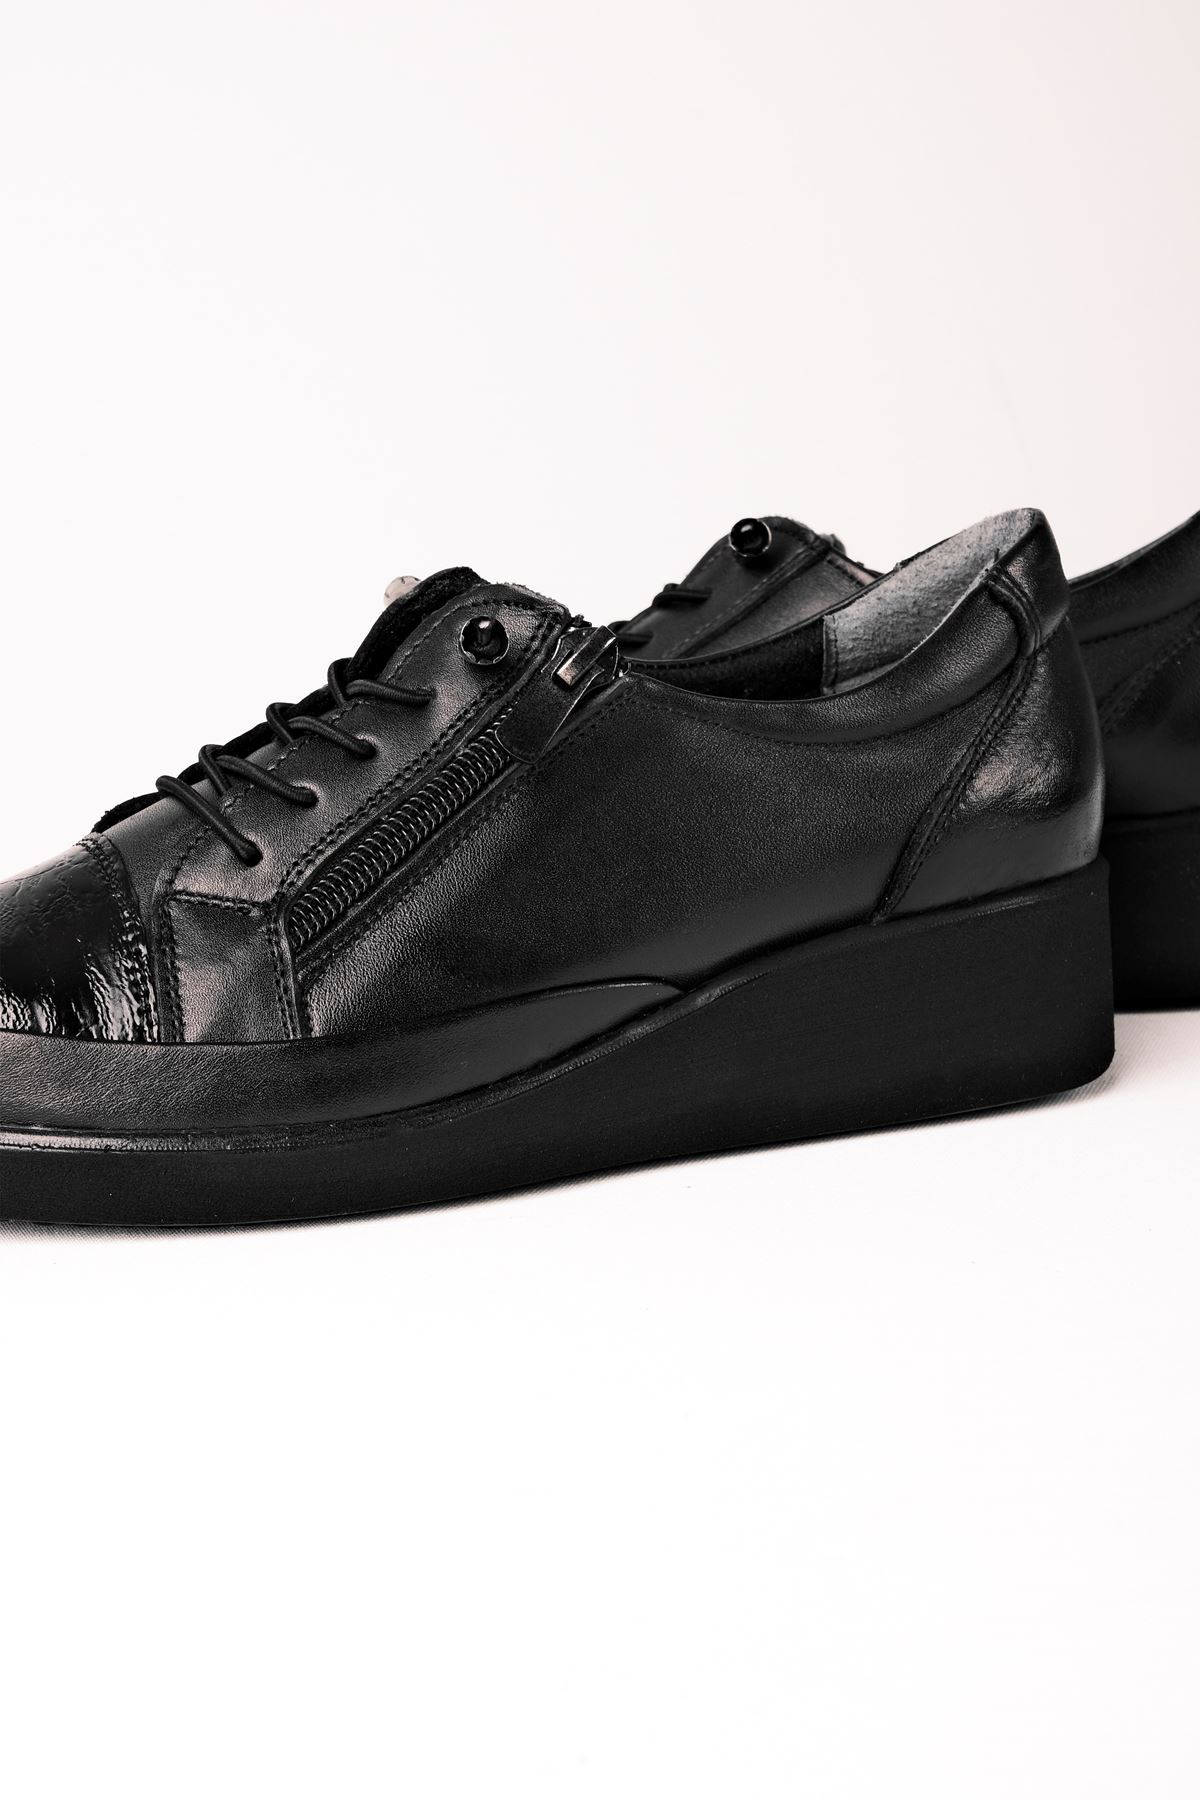 Ellery Kadın Hakiki Deri Kroko Ve Bağcık Detaylı Günlük Ayakkabı-siyah